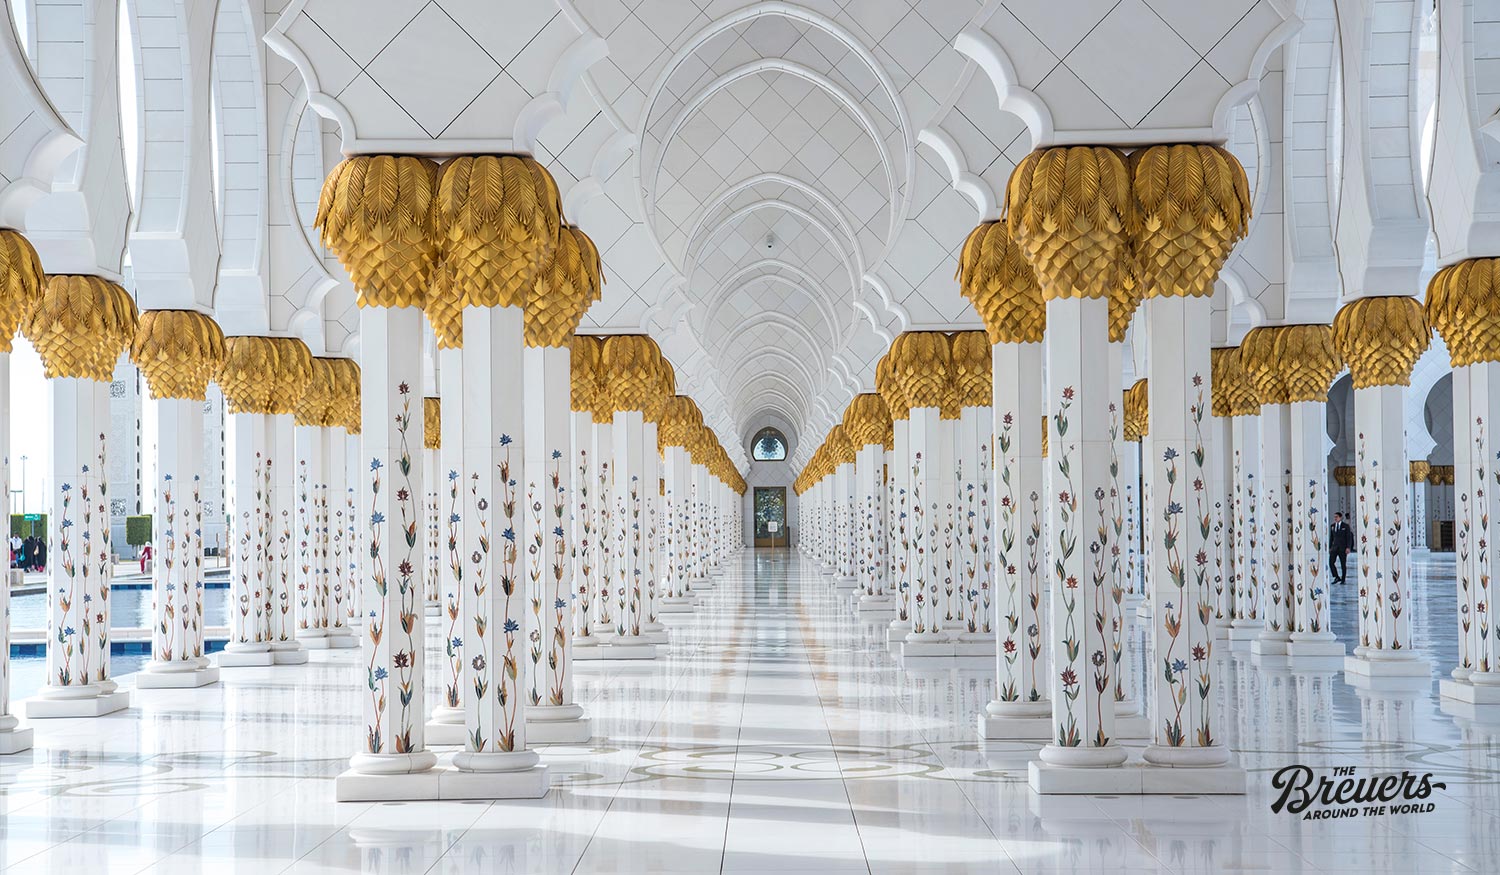 Scheich Zayed Moschee in Abu Dhabi